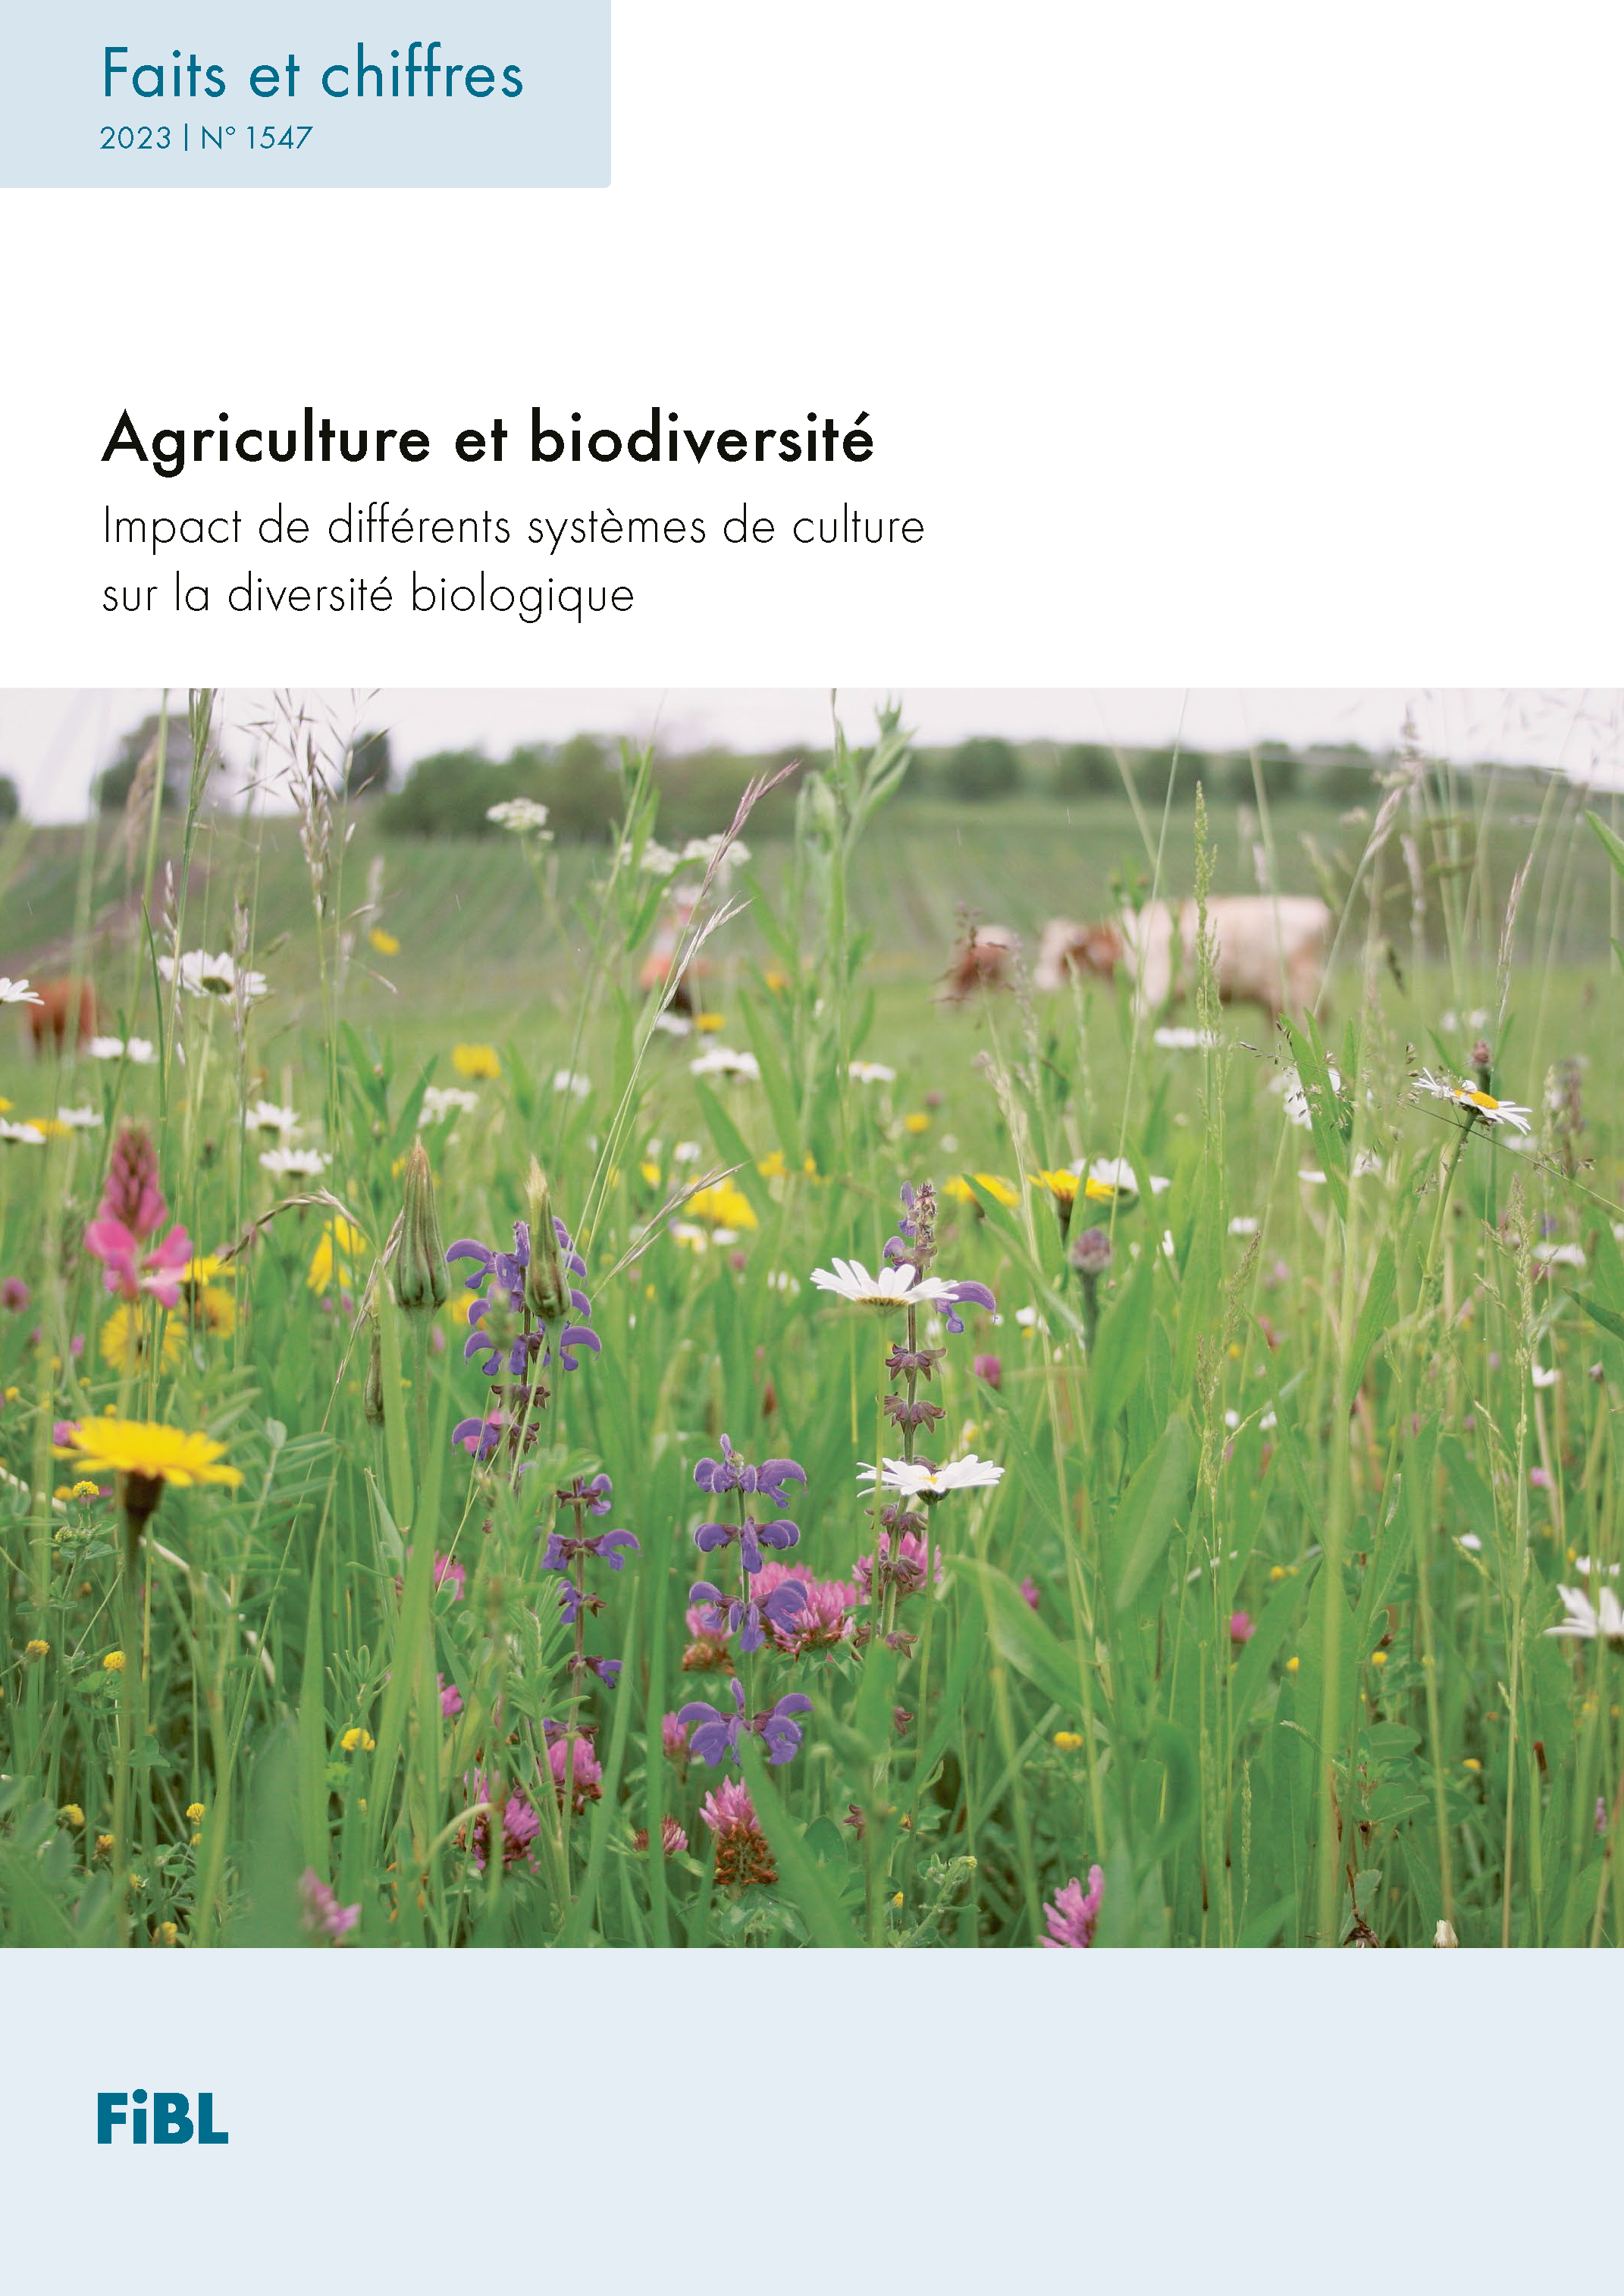 Agriculture biologique et biodiversité